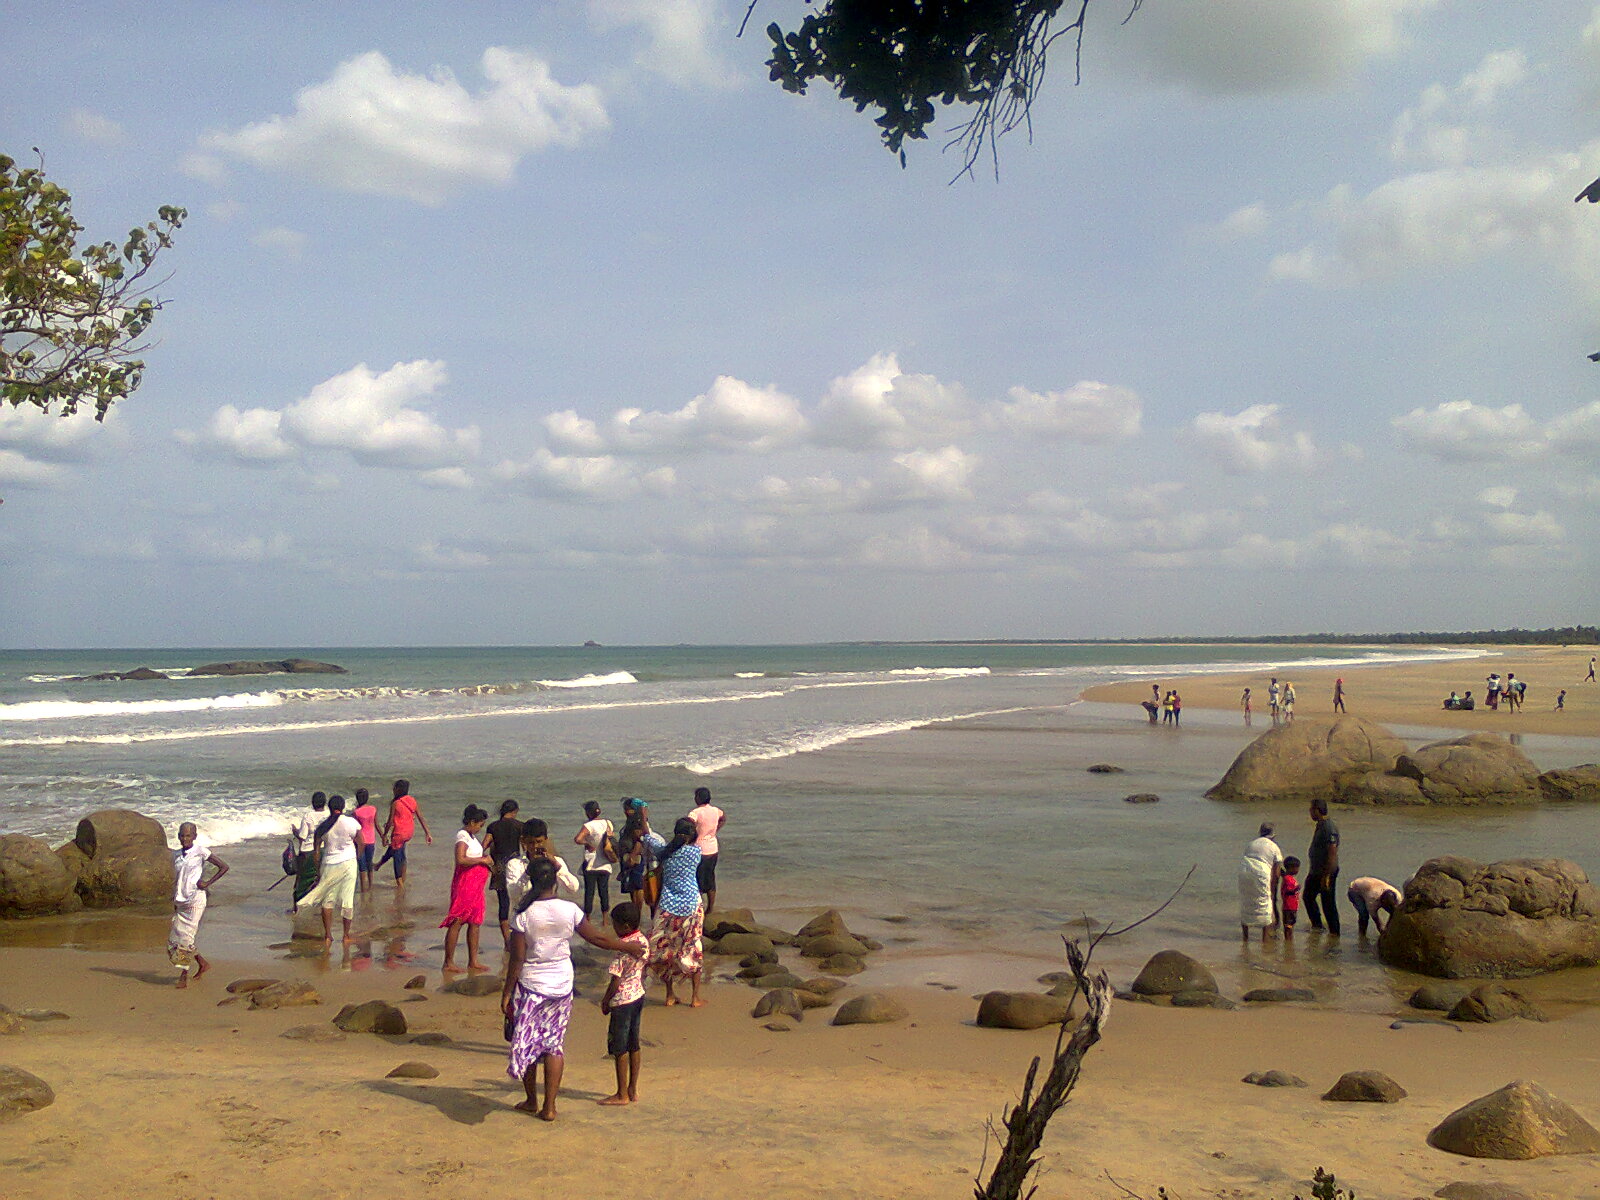 Foto af Lanka Patuna Beach - populært sted blandt afslapningskendere